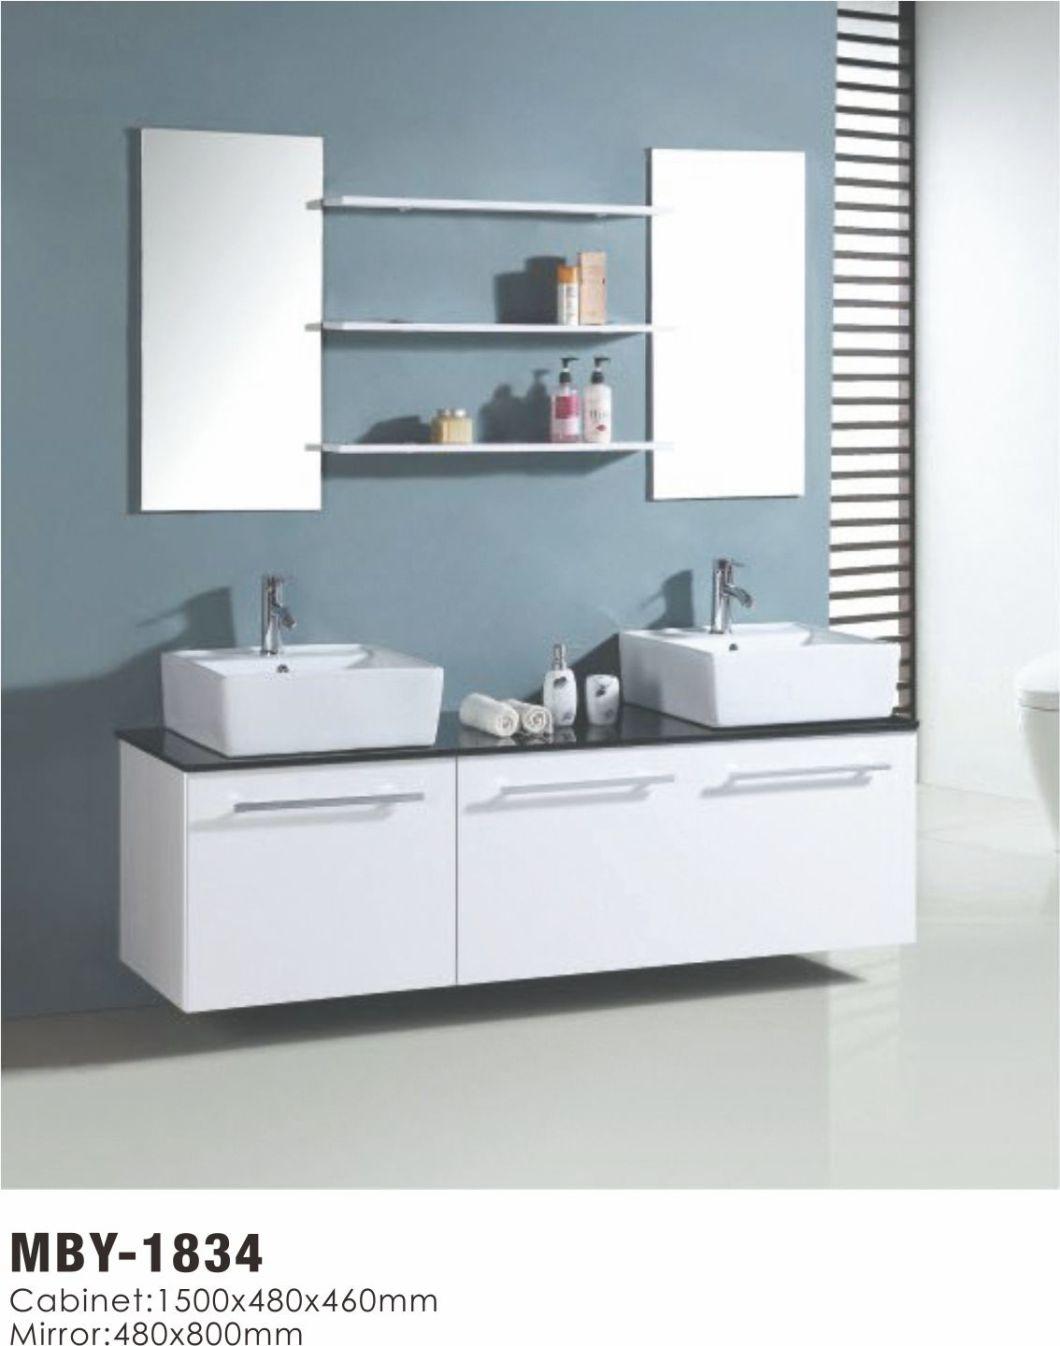 Double Sink MDF Veneer Melamine Bathroom Vanity Cabinets